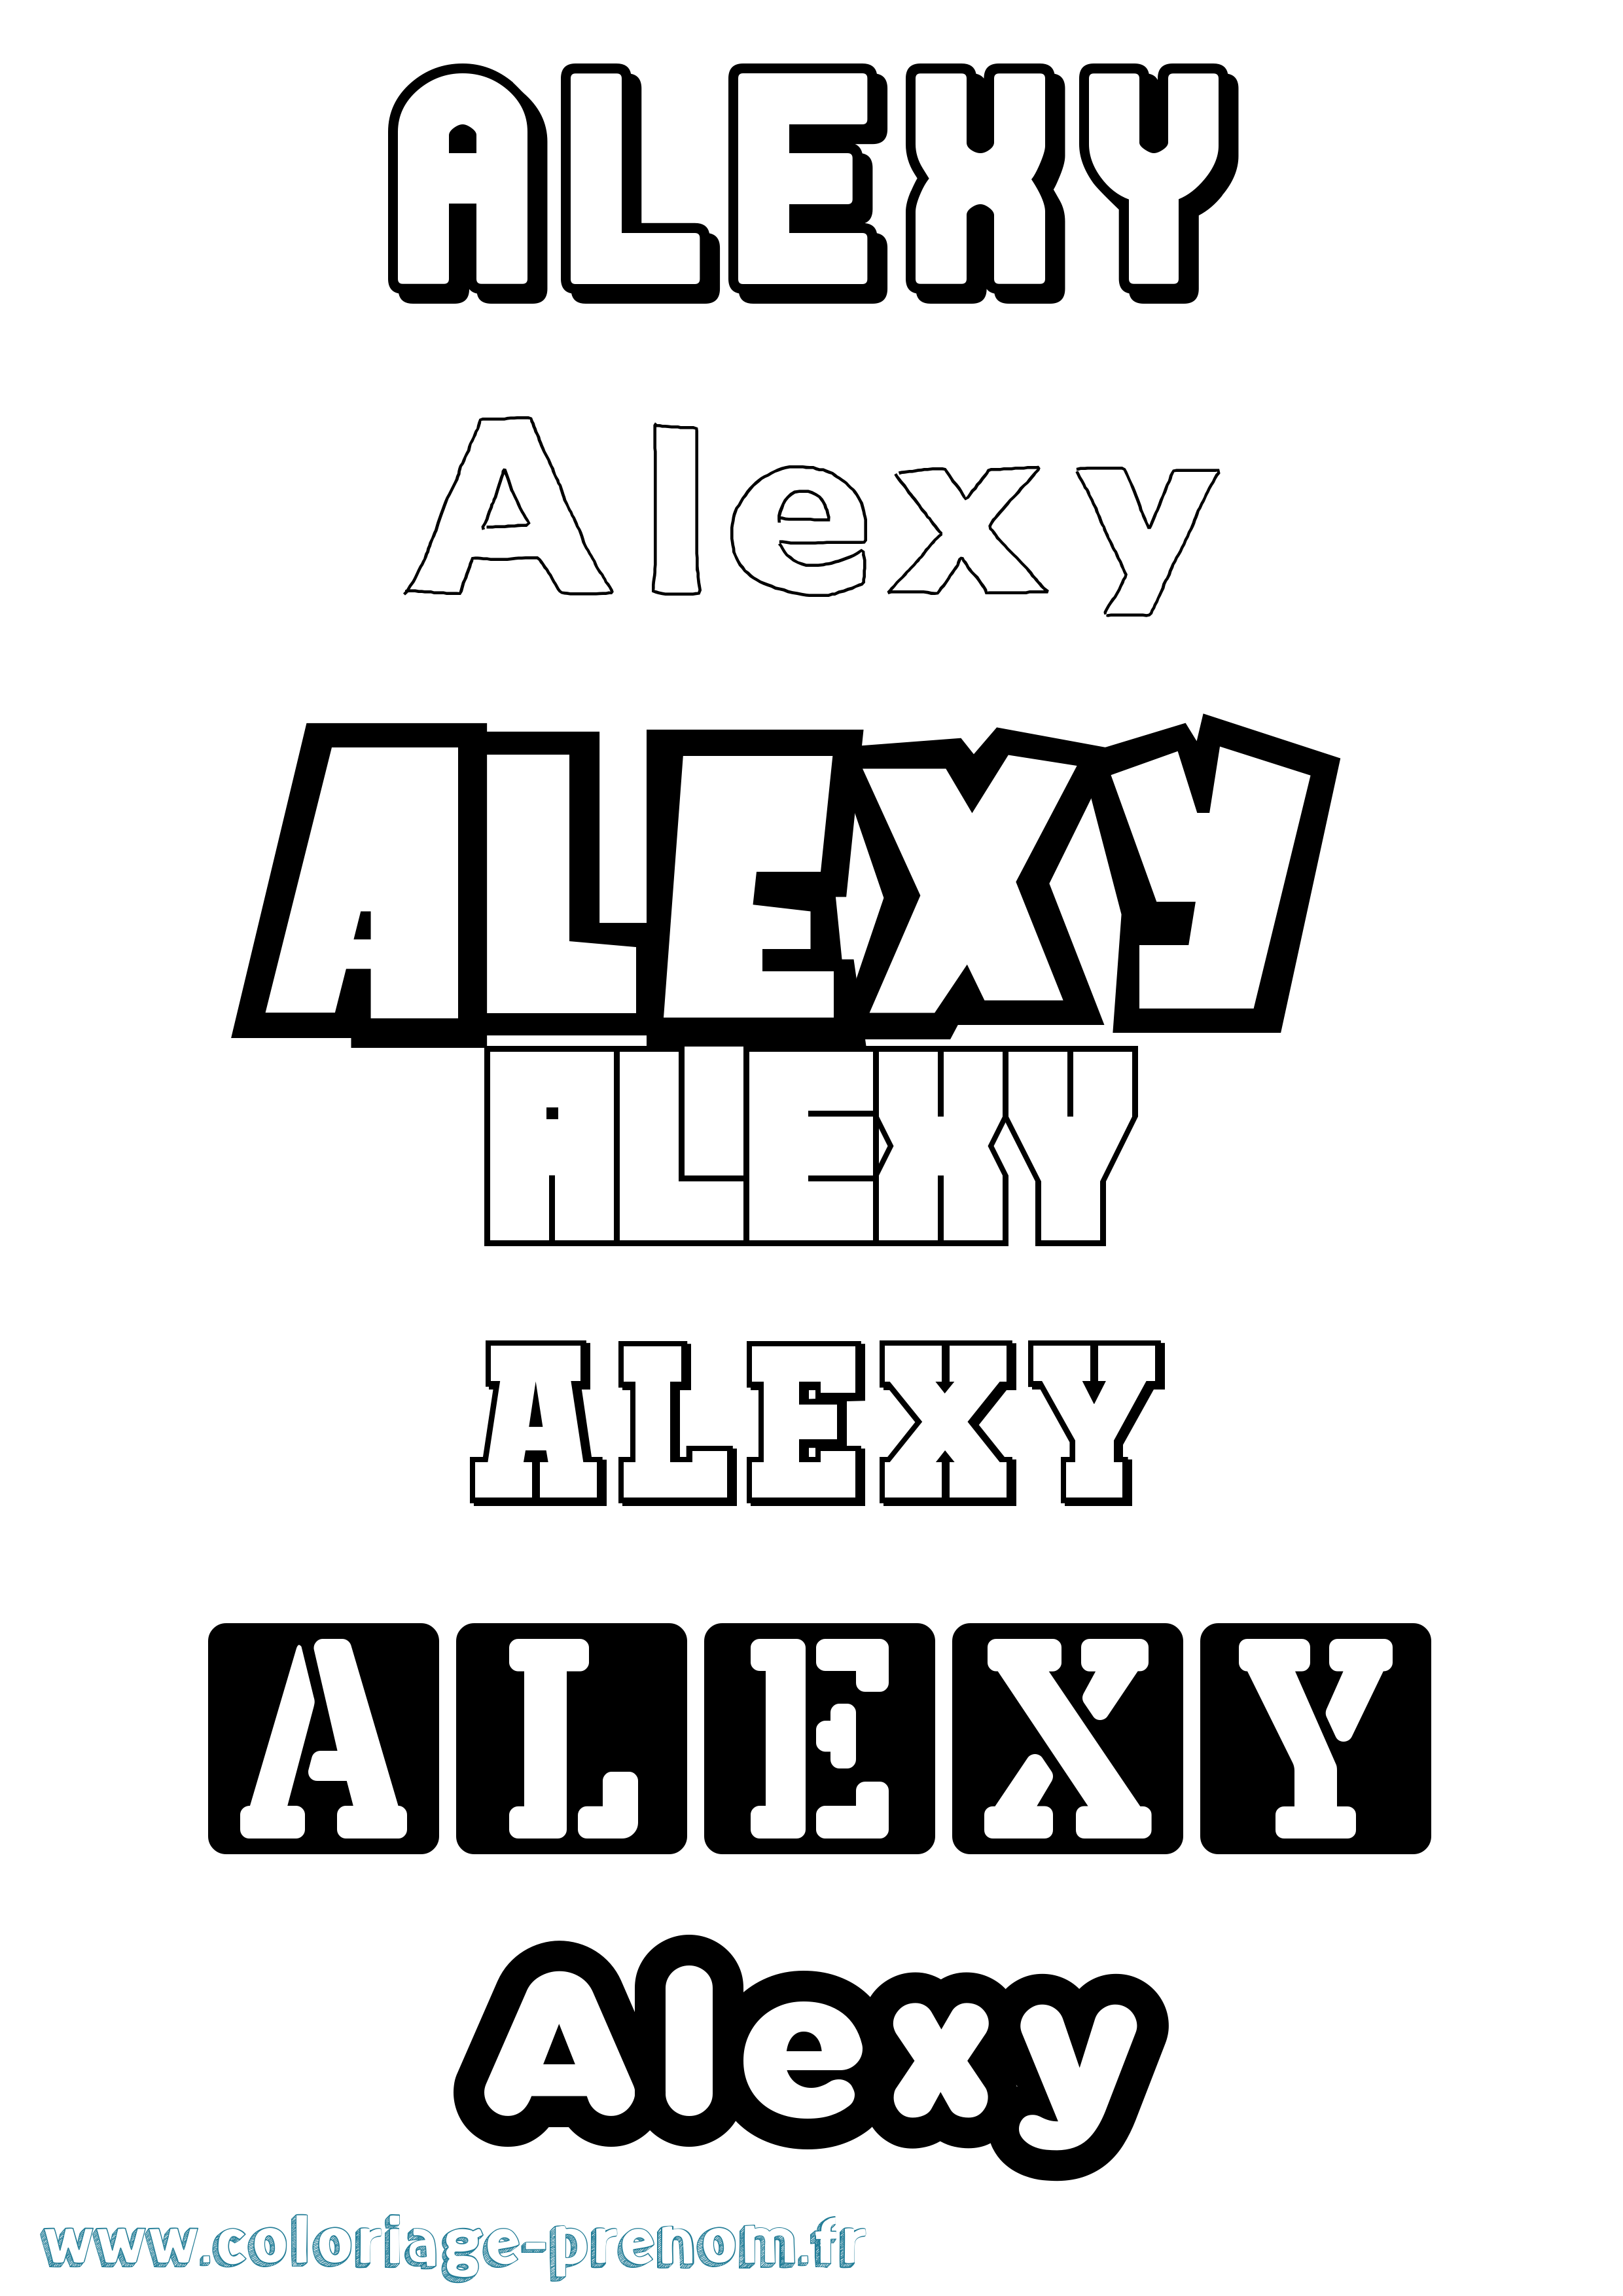 Coloriage prénom Alexy Simple